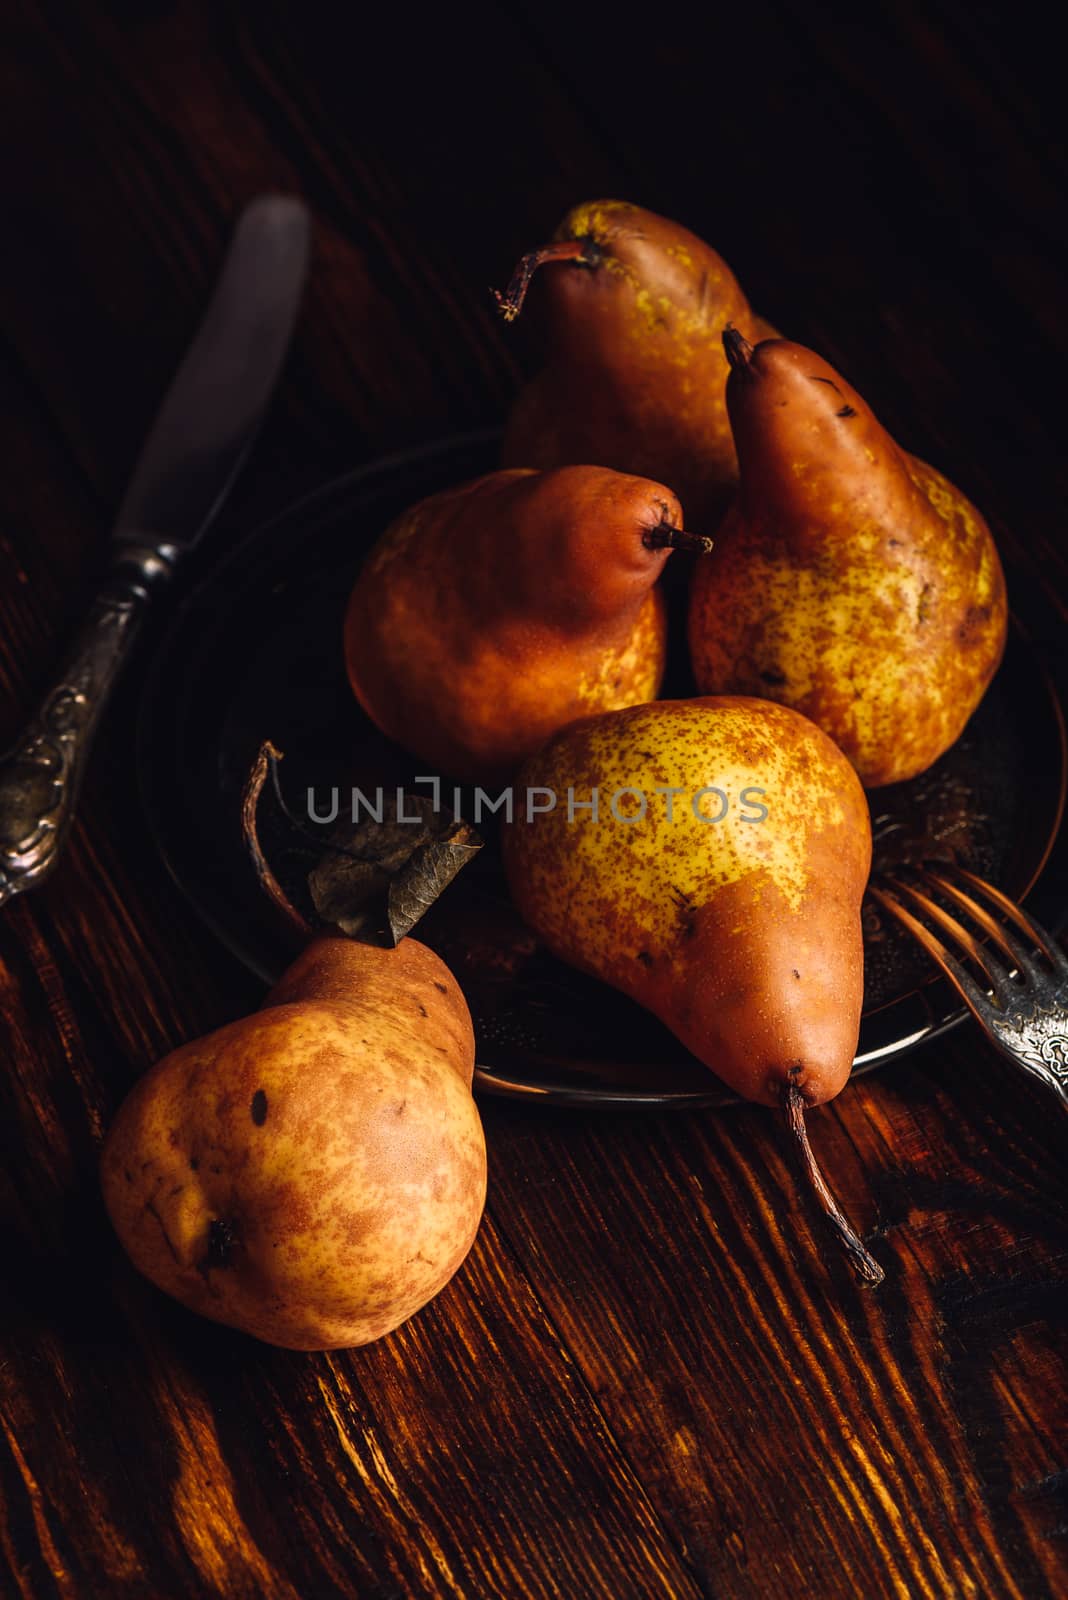 Few Golden Pears on Table. by Seva_blsv